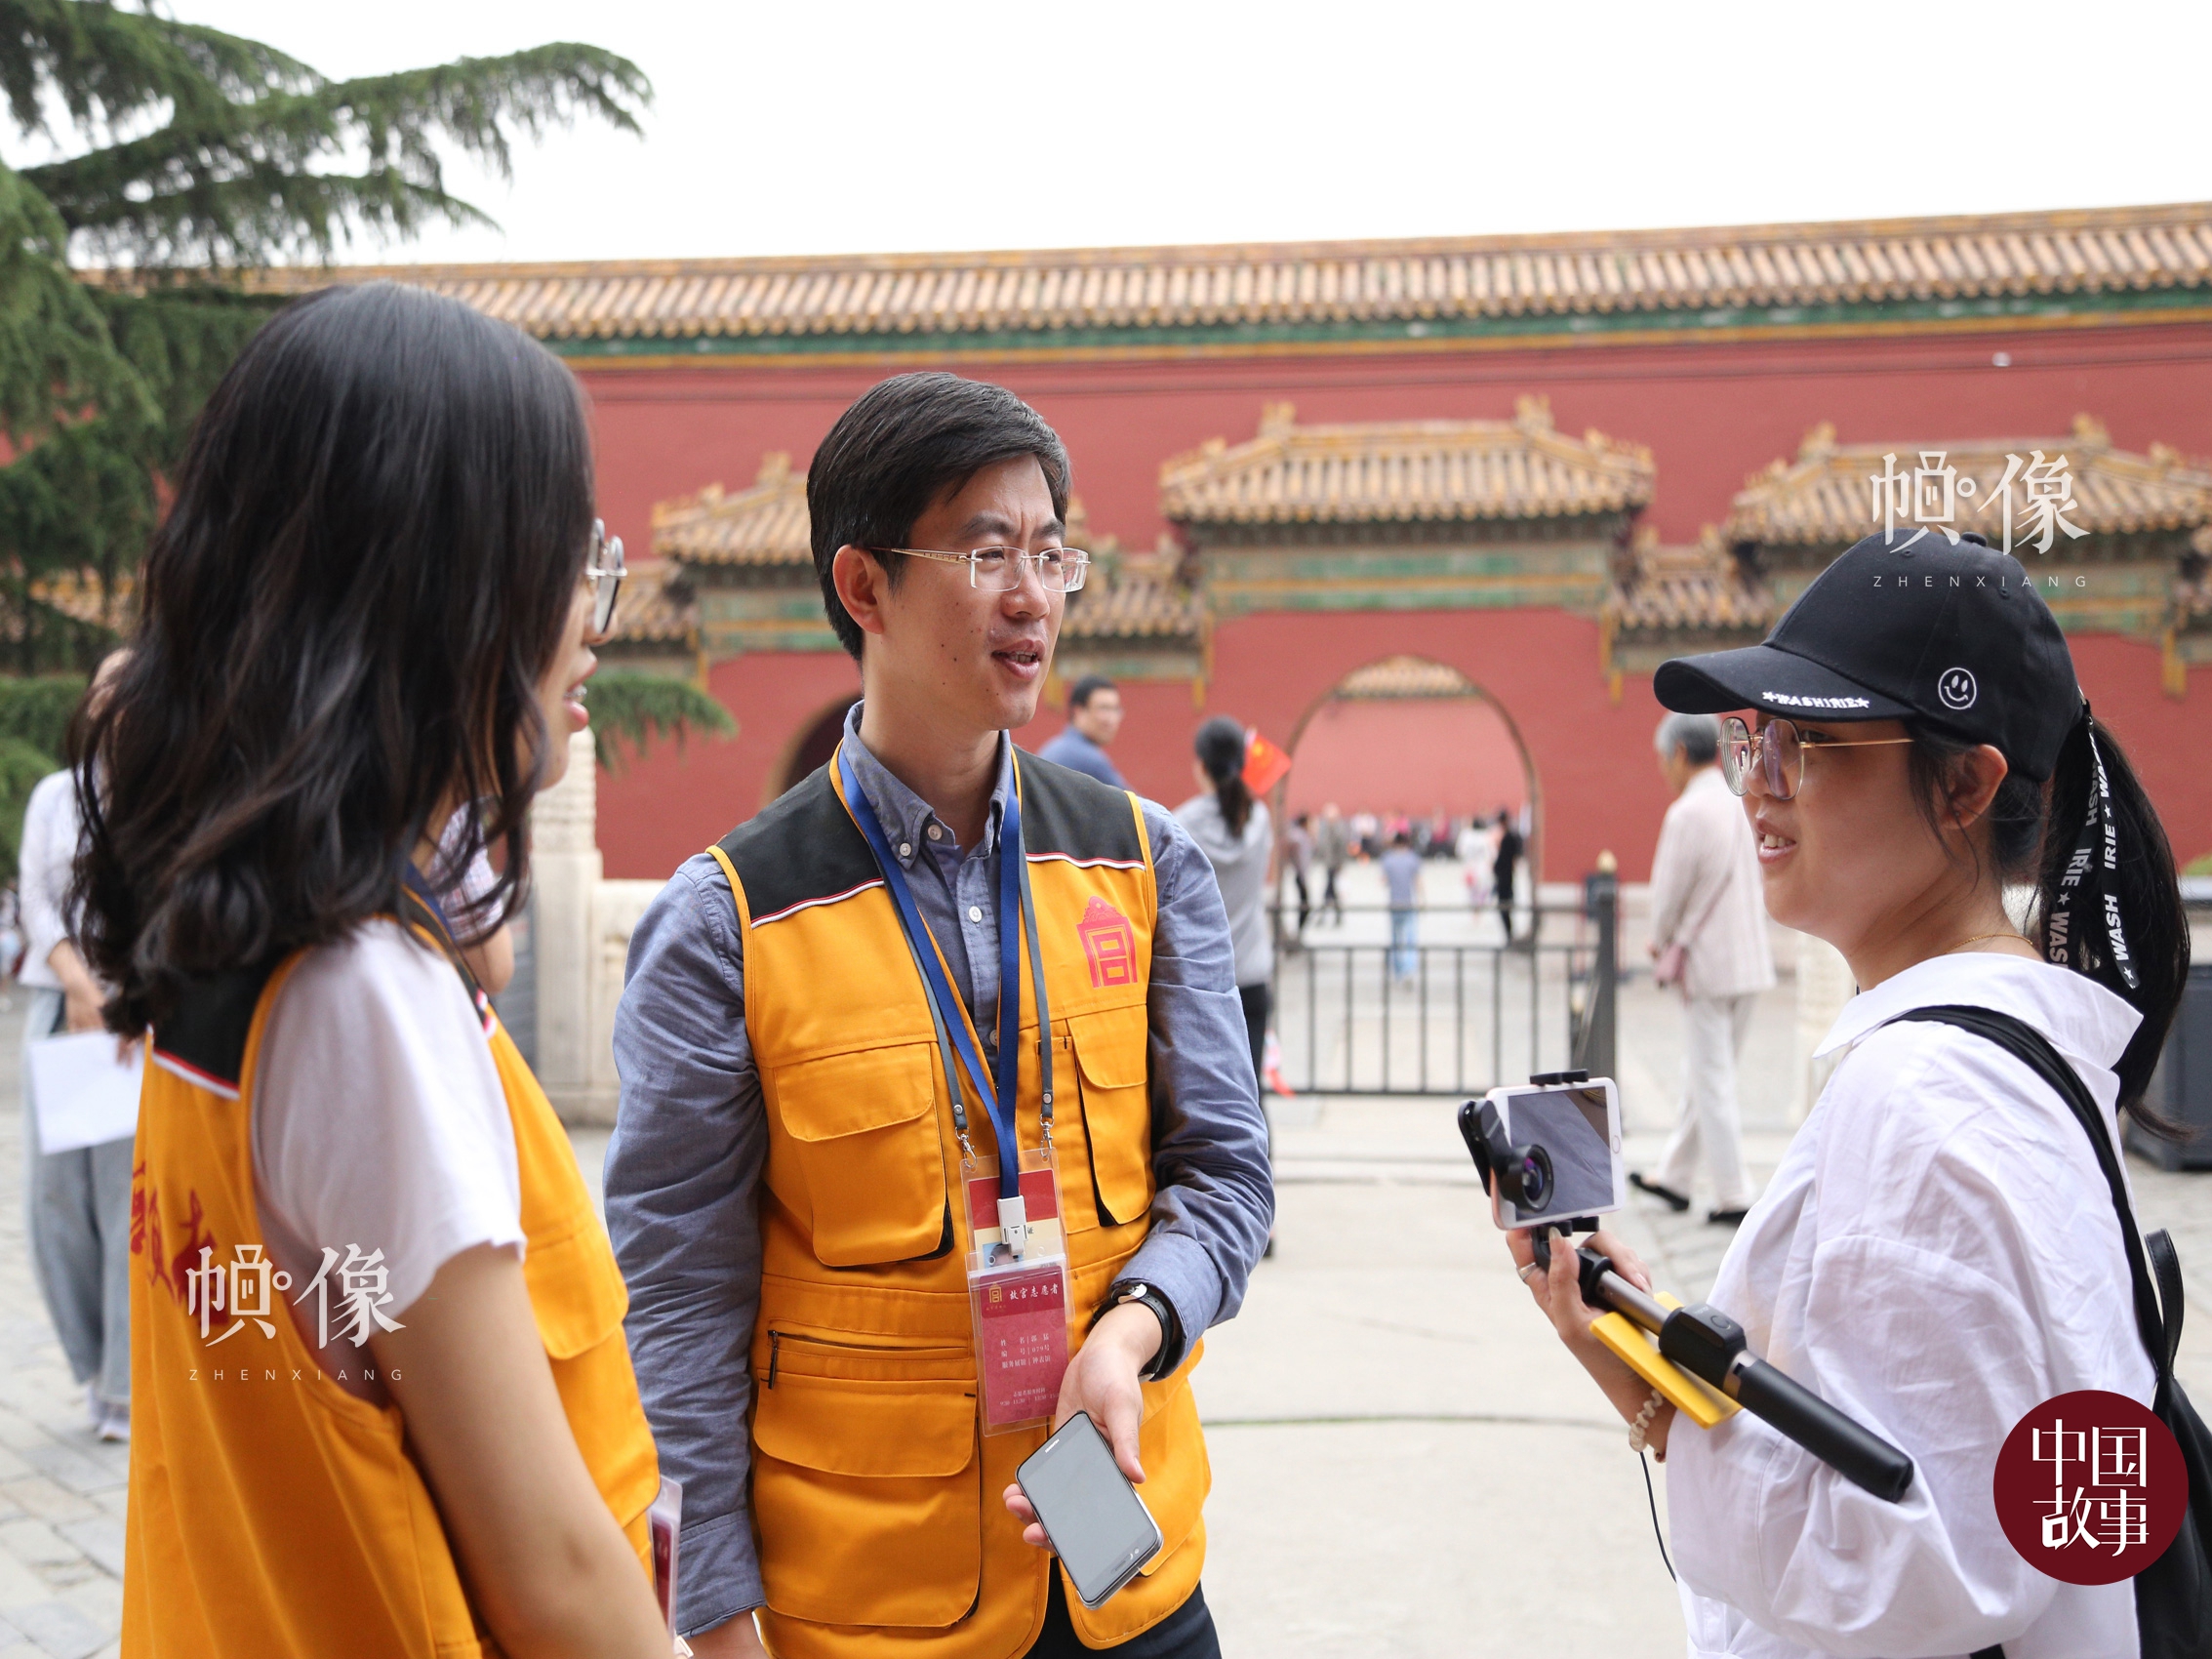 故宫志愿讲解员杨博雅（画面左）和郭猛（画面中）为游客讲解。 中国网实习记者 赵丹 摄